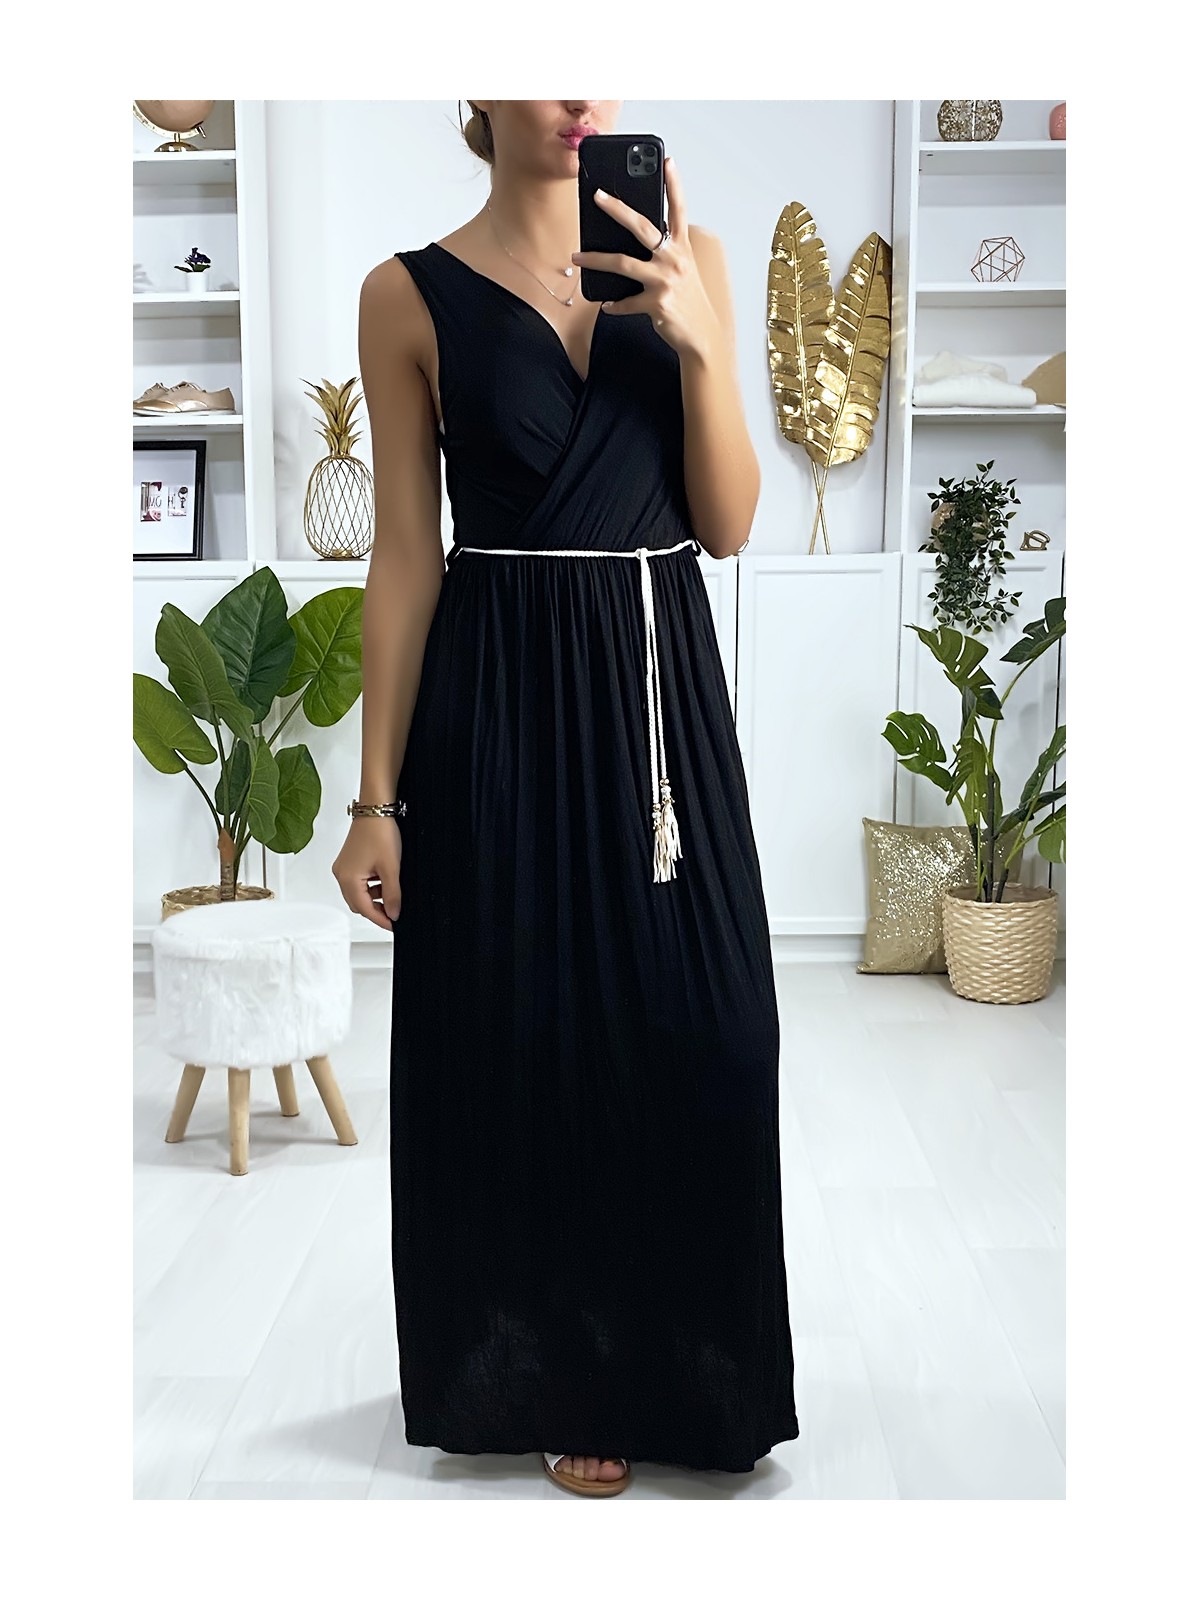 Longue robe croisé noir avec ceinture en cordon - 1